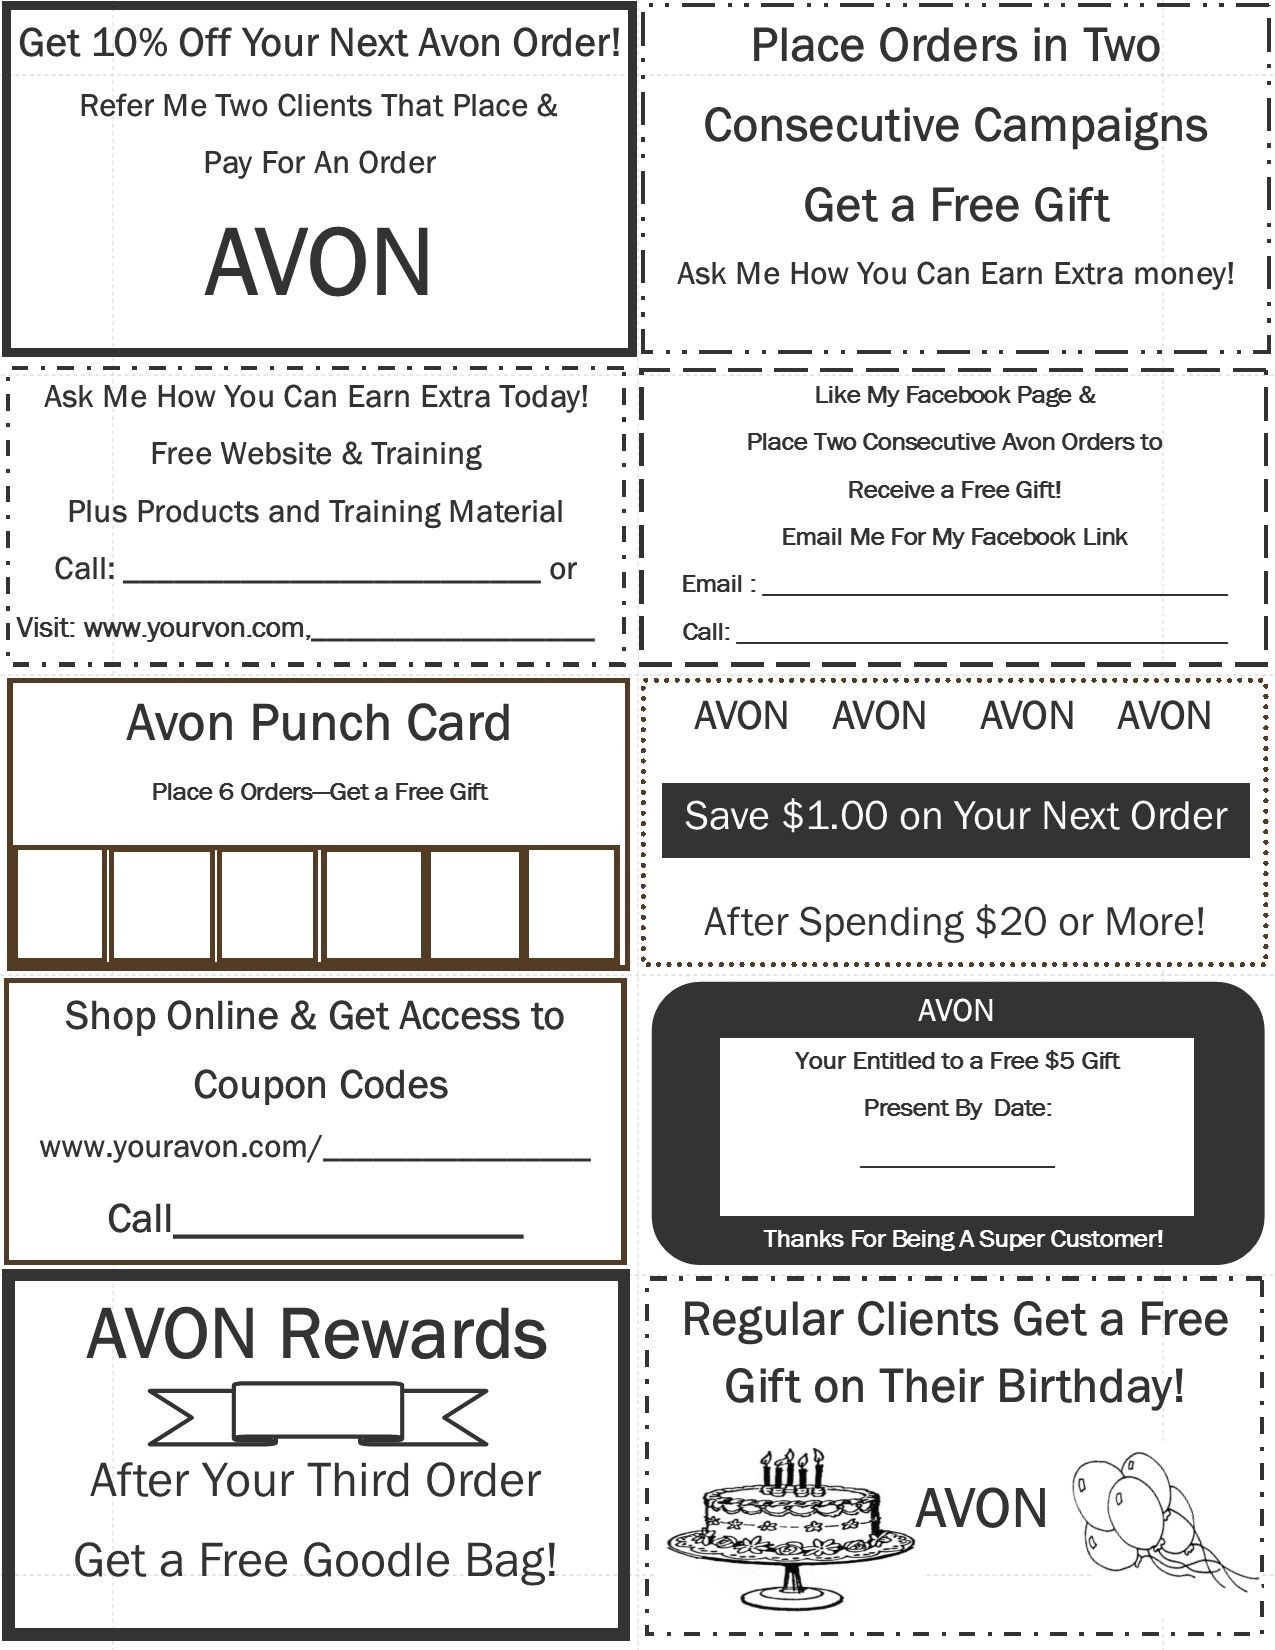 43 Avon Ideas Avon Avon Business Avon Marketing - Free Printable Avon Flyers